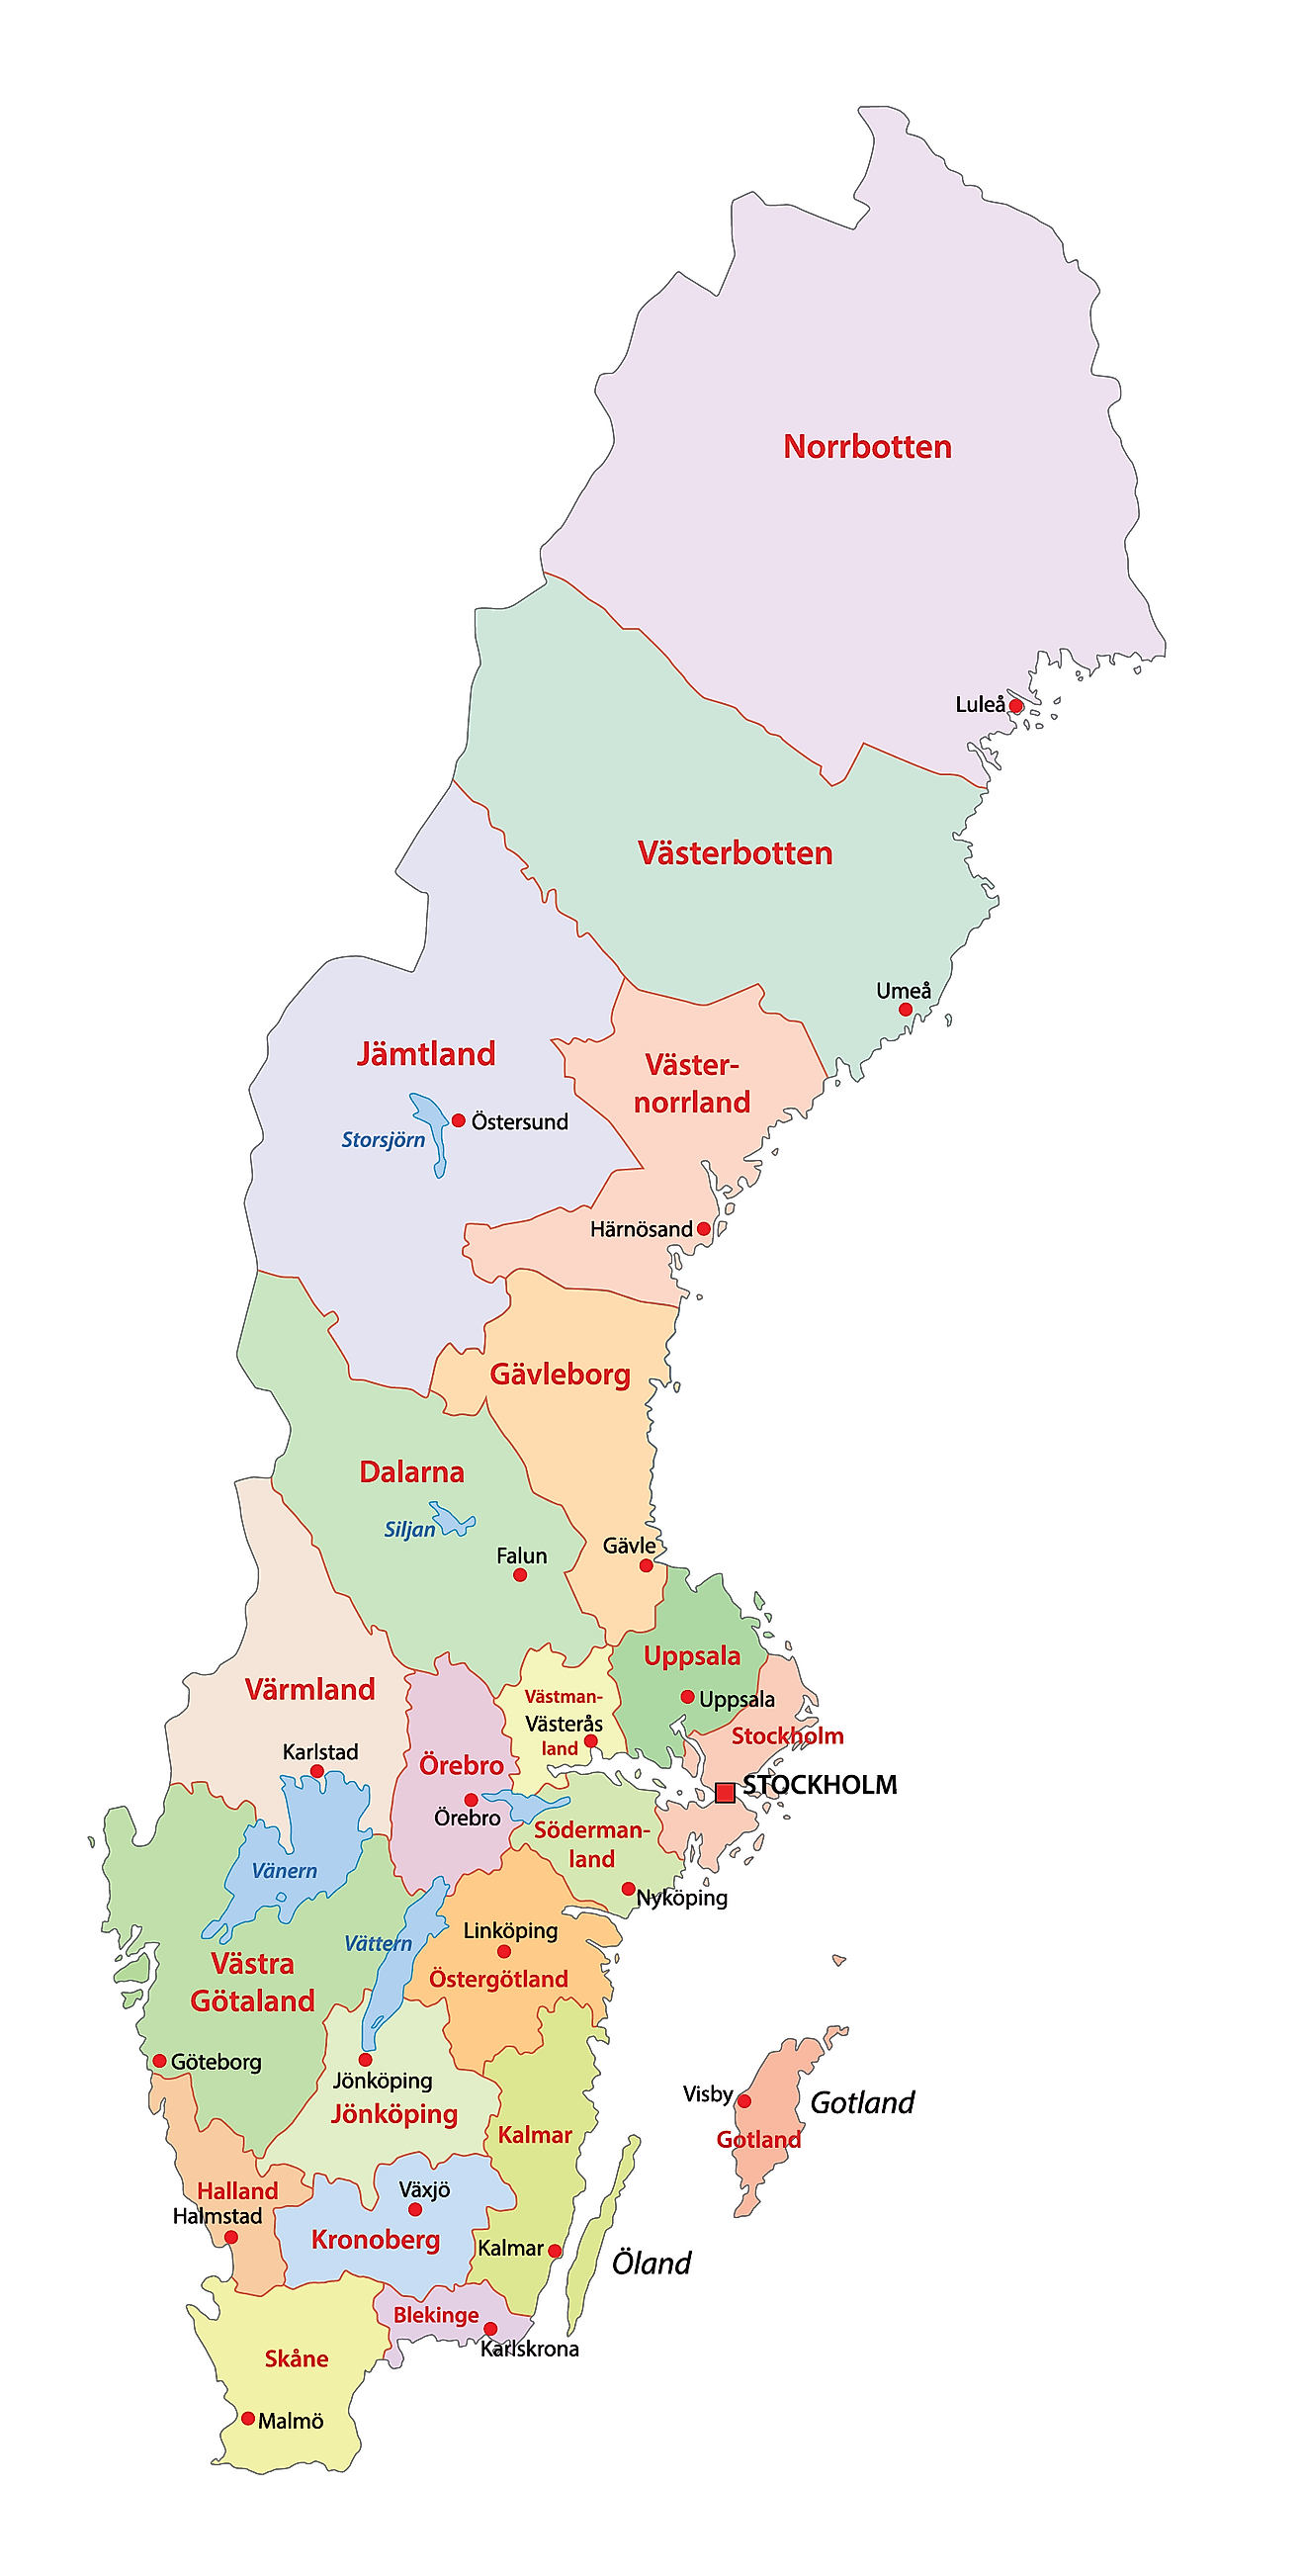 Mapa político de Suecia que muestra 21 condados y la ciudad capital de Estocolmo.